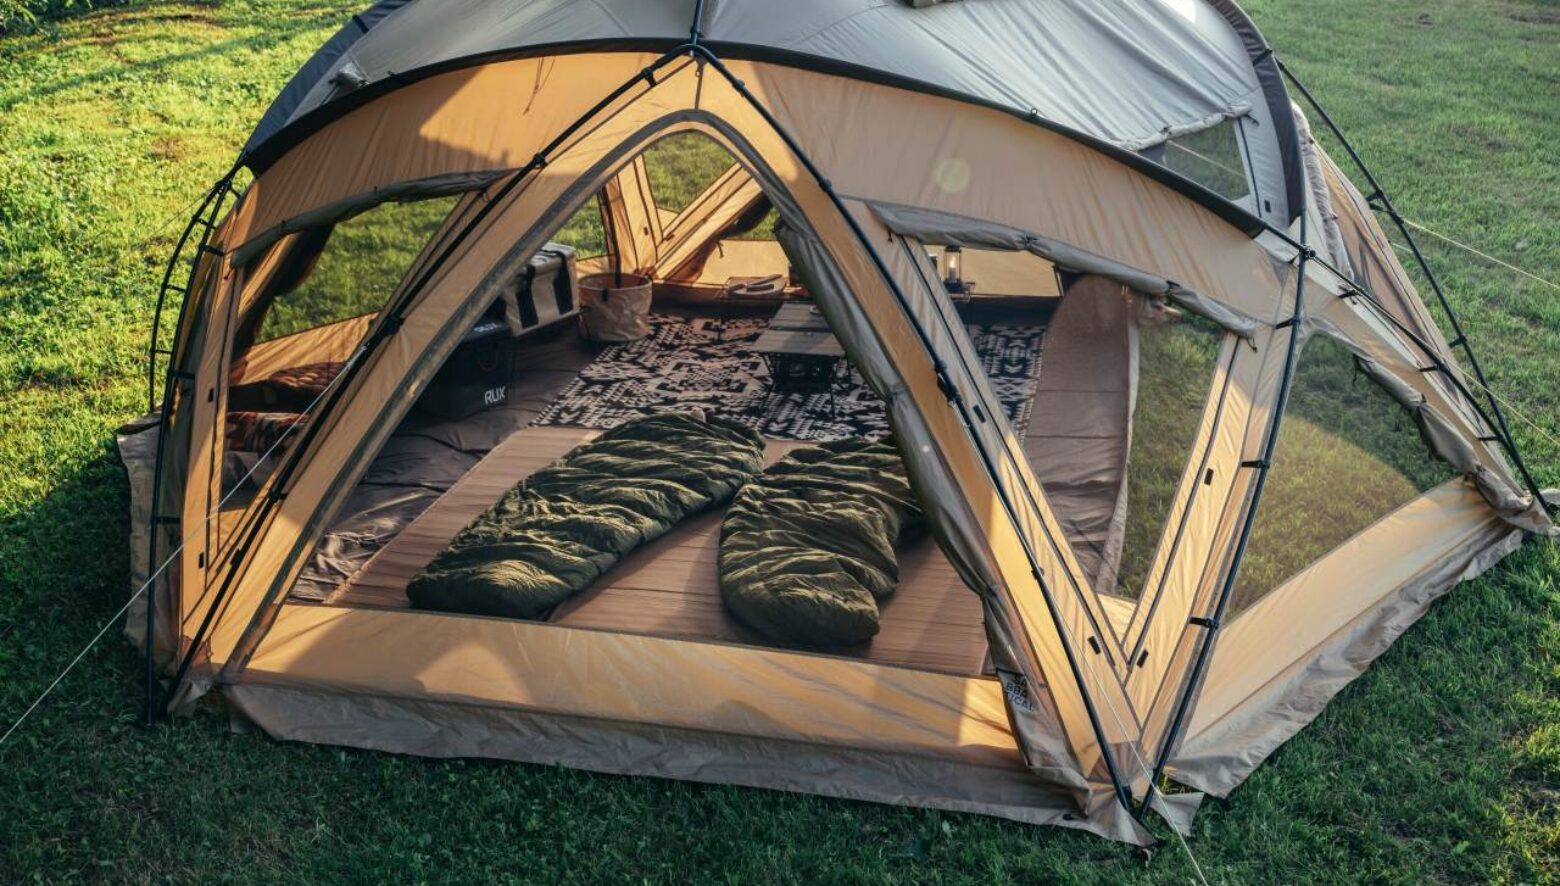 サバティカルの注目大型テント、サバルパインドームが9月上旬に 